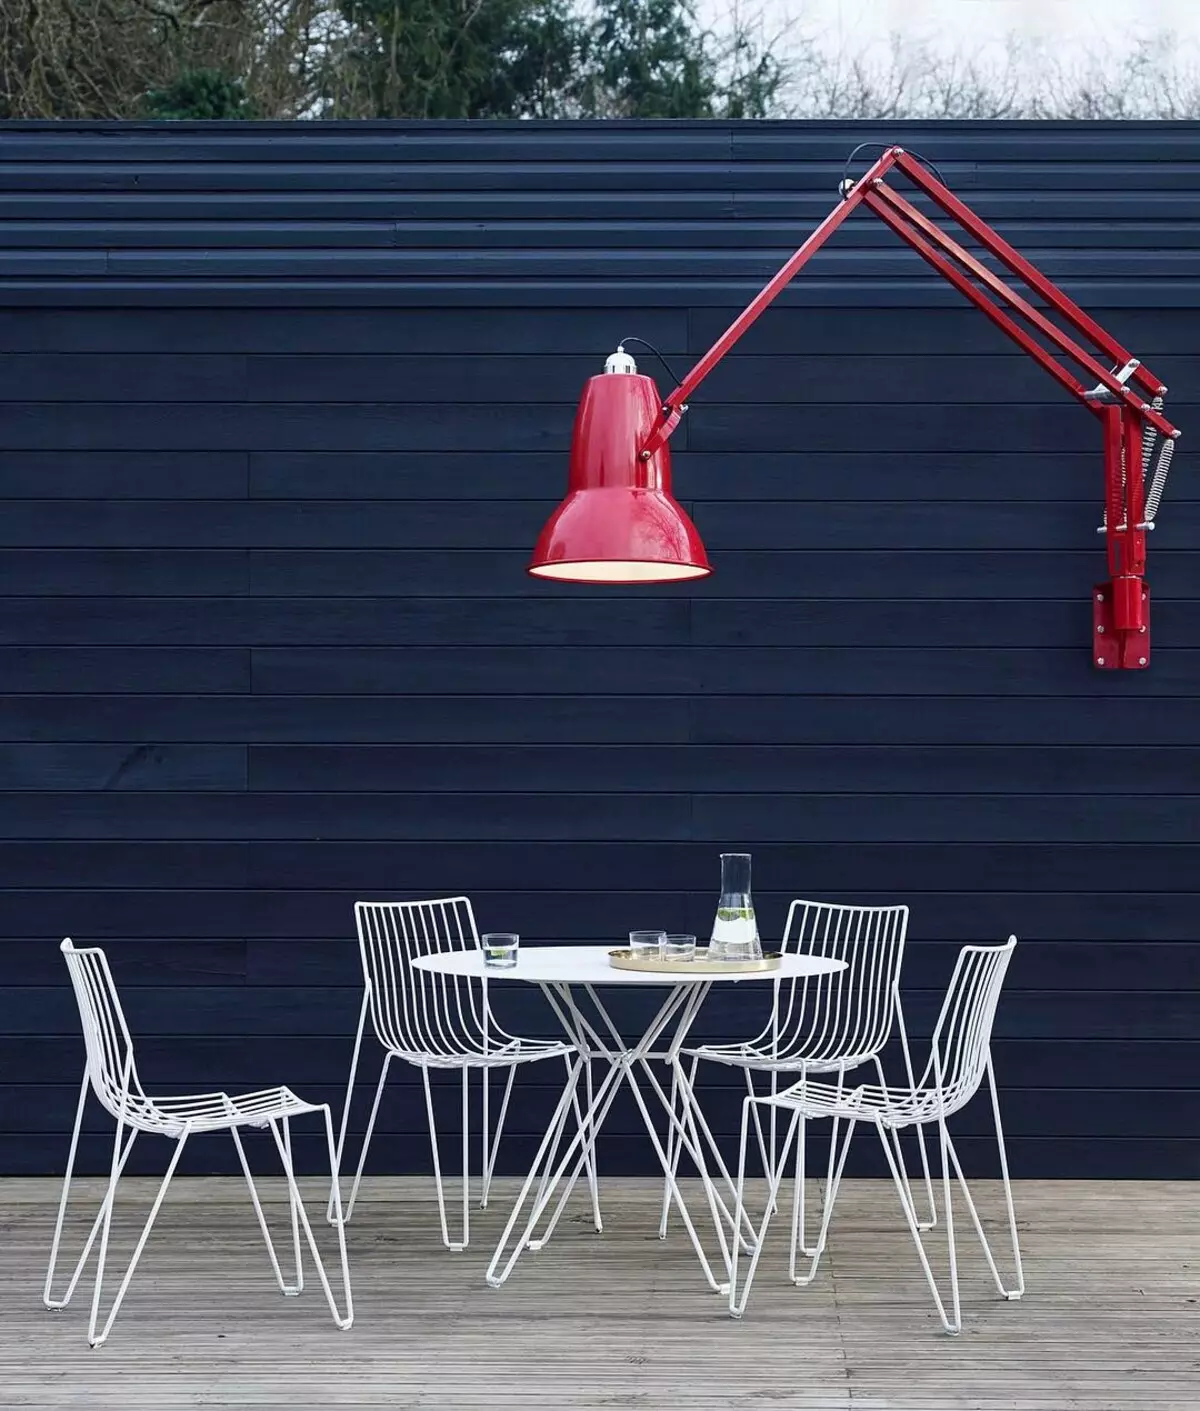 Ontwerp idee reusachtige lamp voor cottage foto